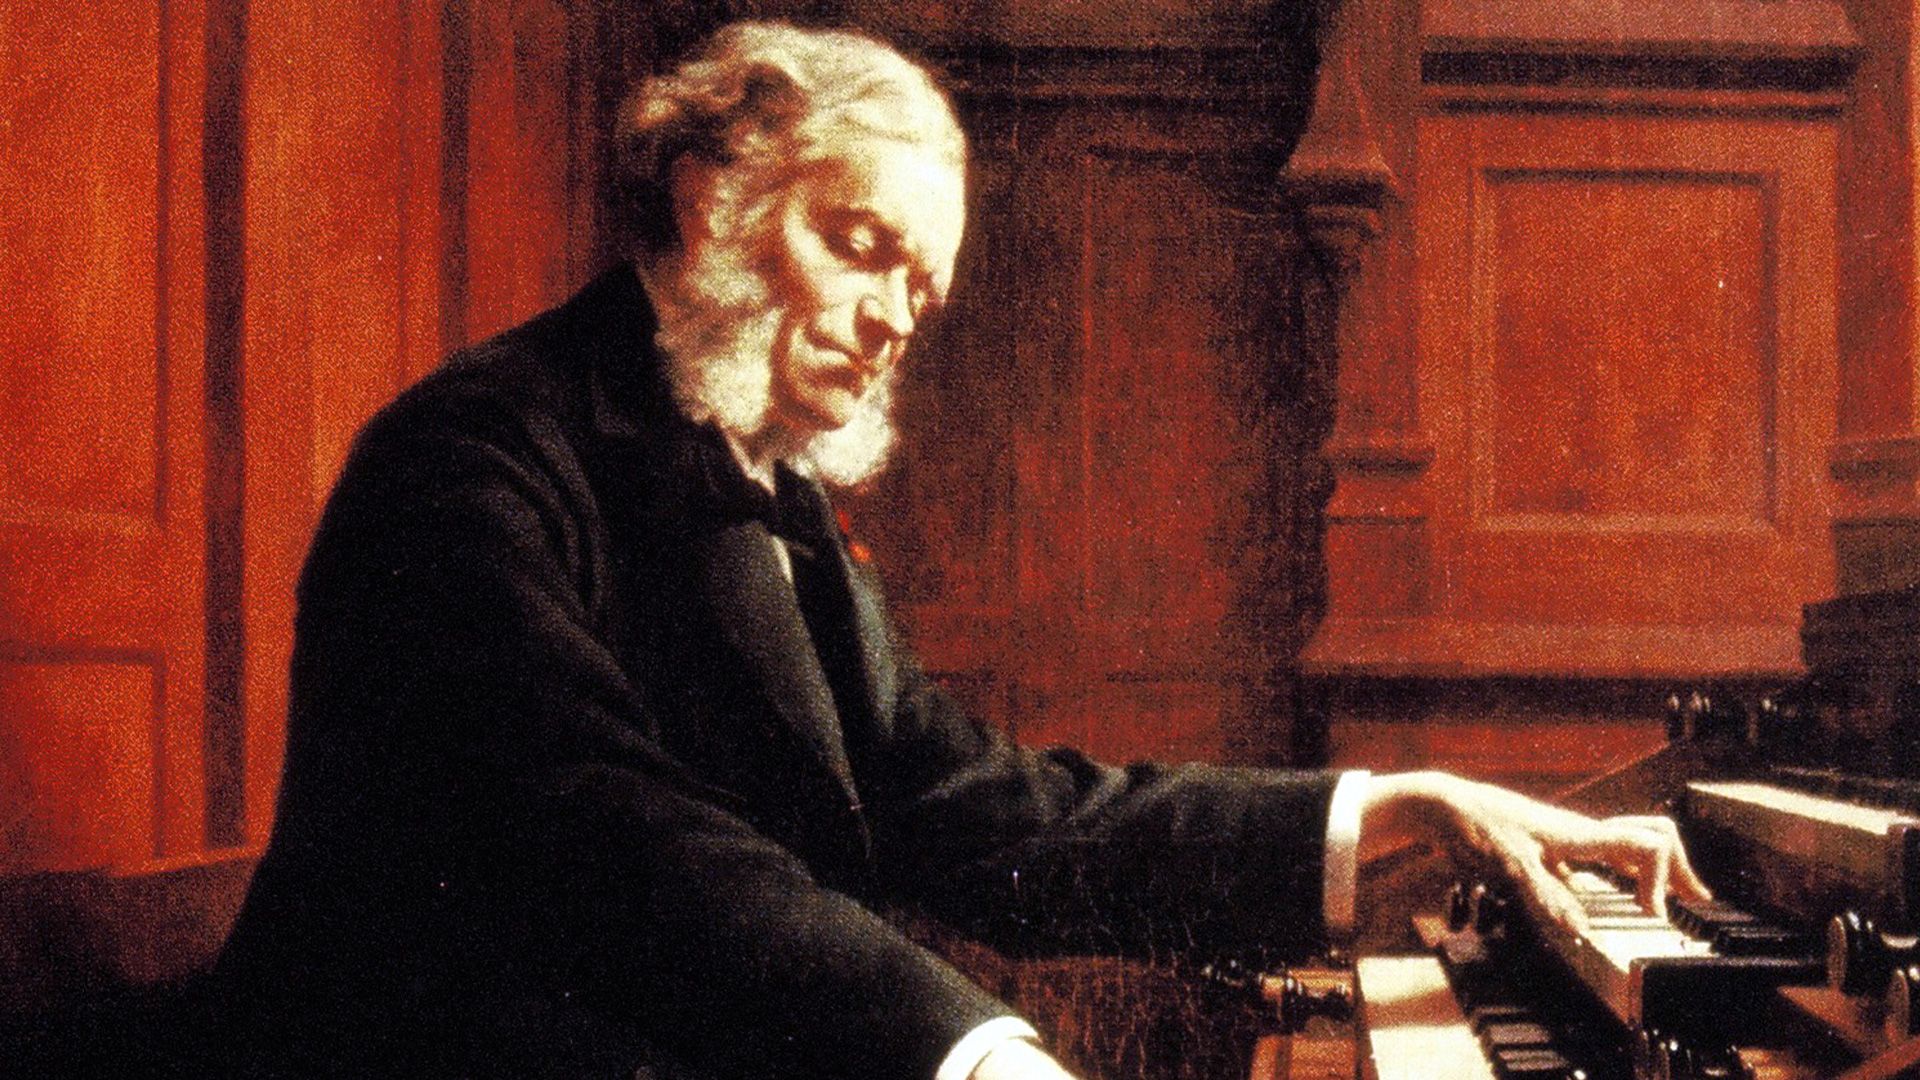 César Franck à l’orgue de Sainte-Clotilde, Paris (Association Aristide Cavaillé-Coll)